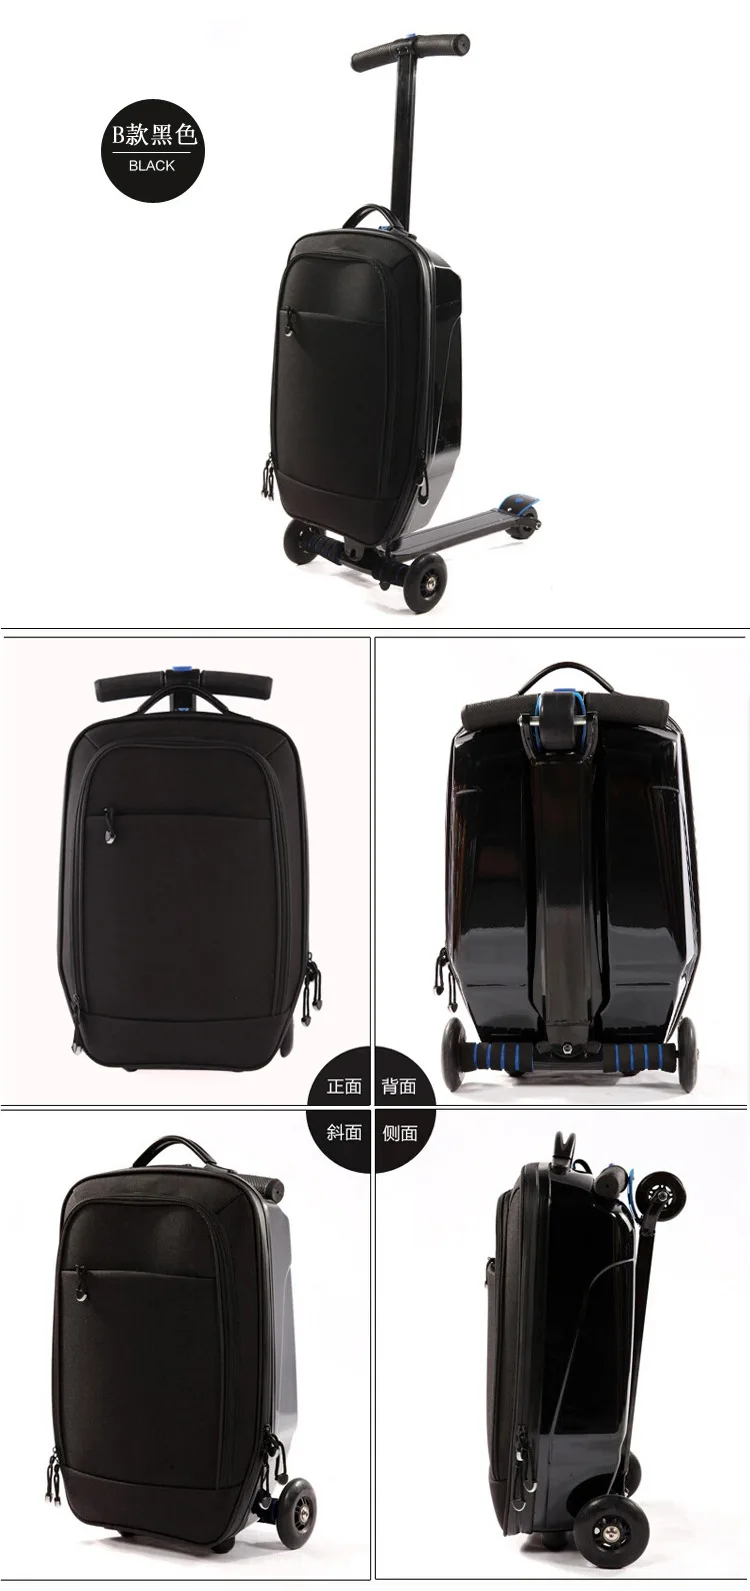 CARRYLOVE Высокое качество мультфильм чемодан серии 21 размеры супер скейтборд PC сумки на колёсиках Spinner бренд Дорожный чемодан